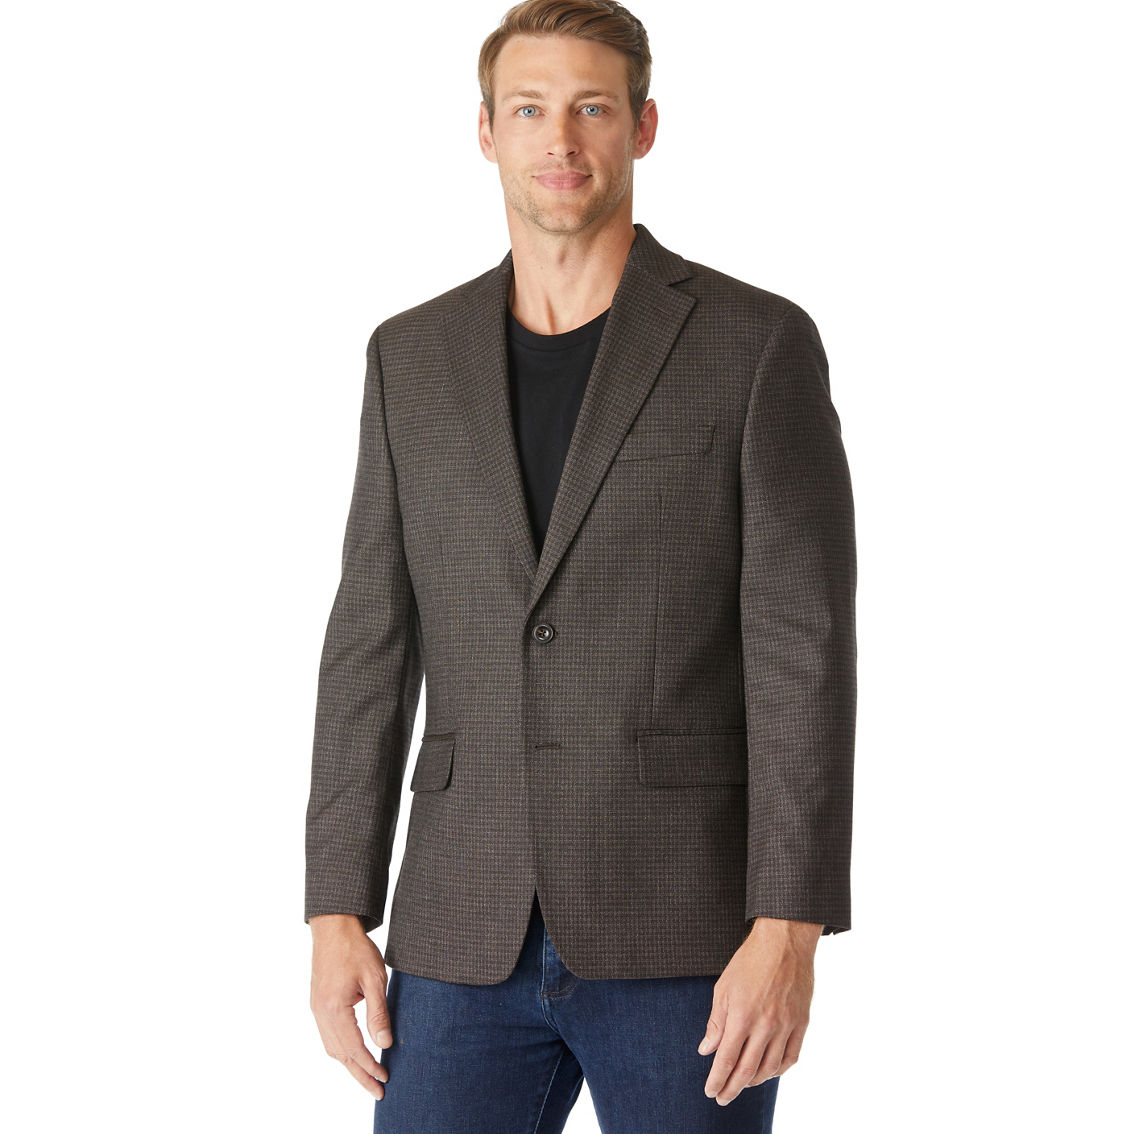 Michael Kors Classic Fit Brown Sport Coat | Suits & Suit Separates ...